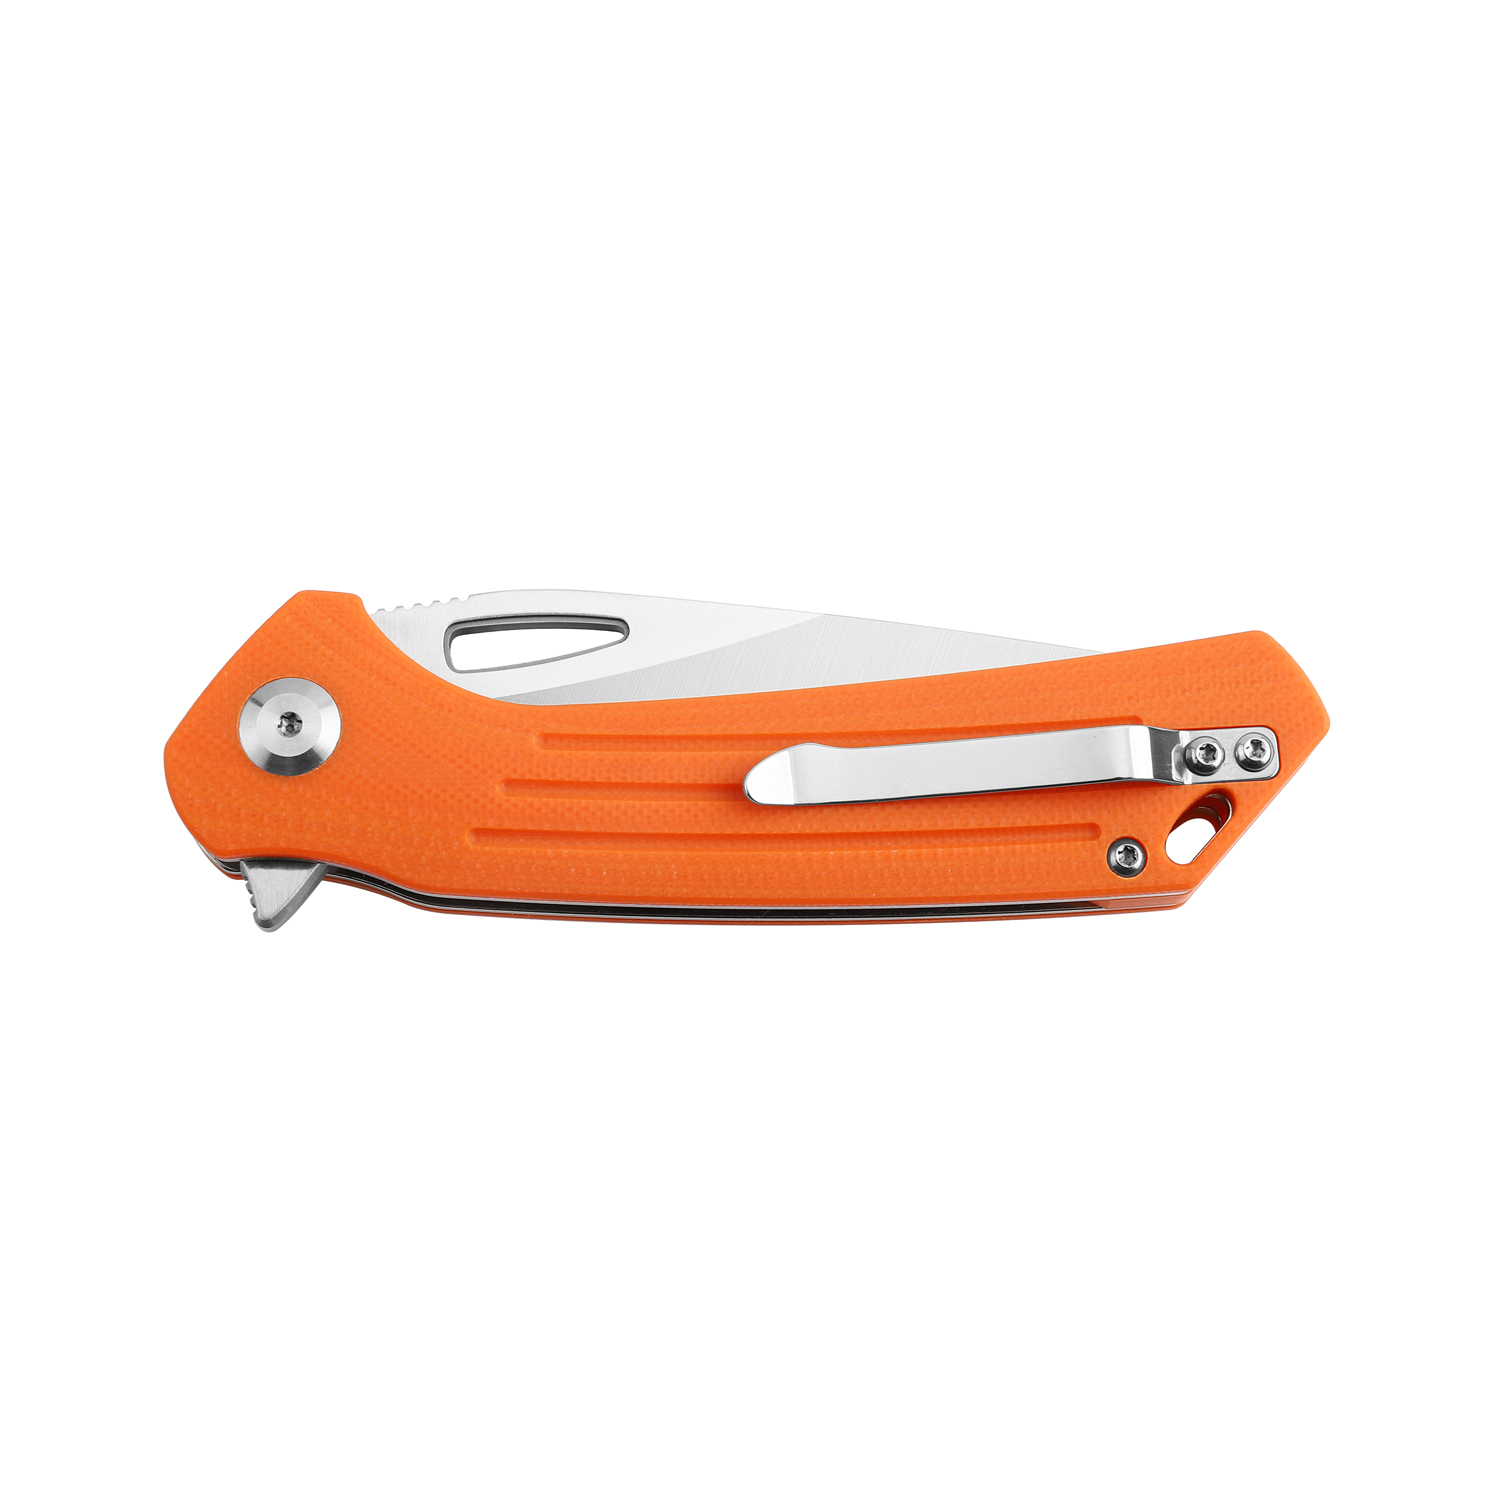 Складной нож Firebird FH921-OR, сталь D2, рукоять G10 оранжевая - фото 5